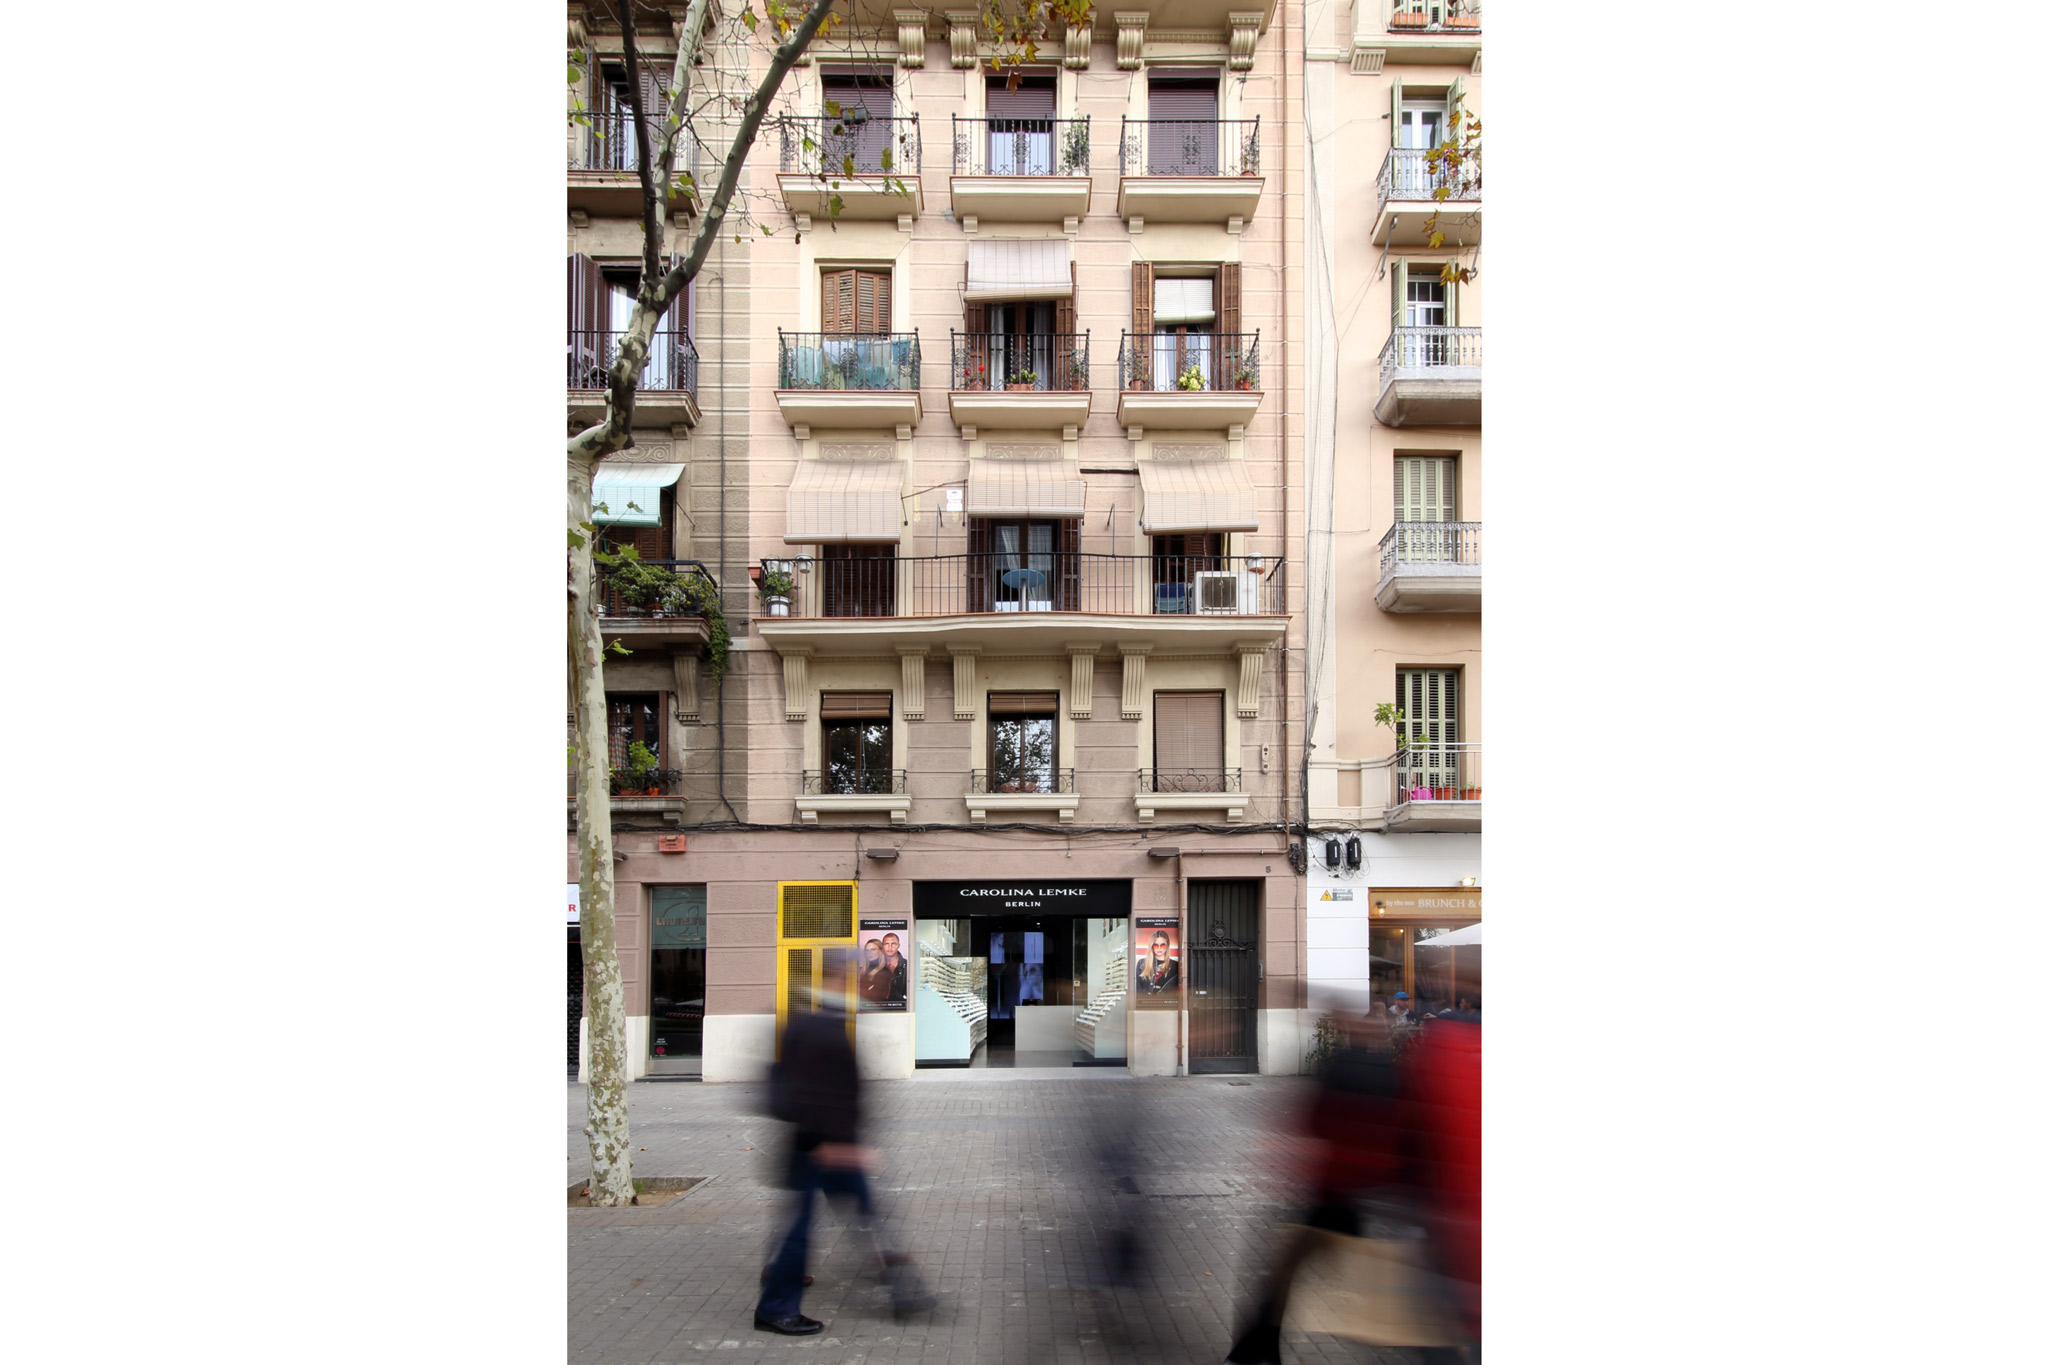 Botiga Carolina Lemke Joan de Borbó | Arquitectes Barcelona